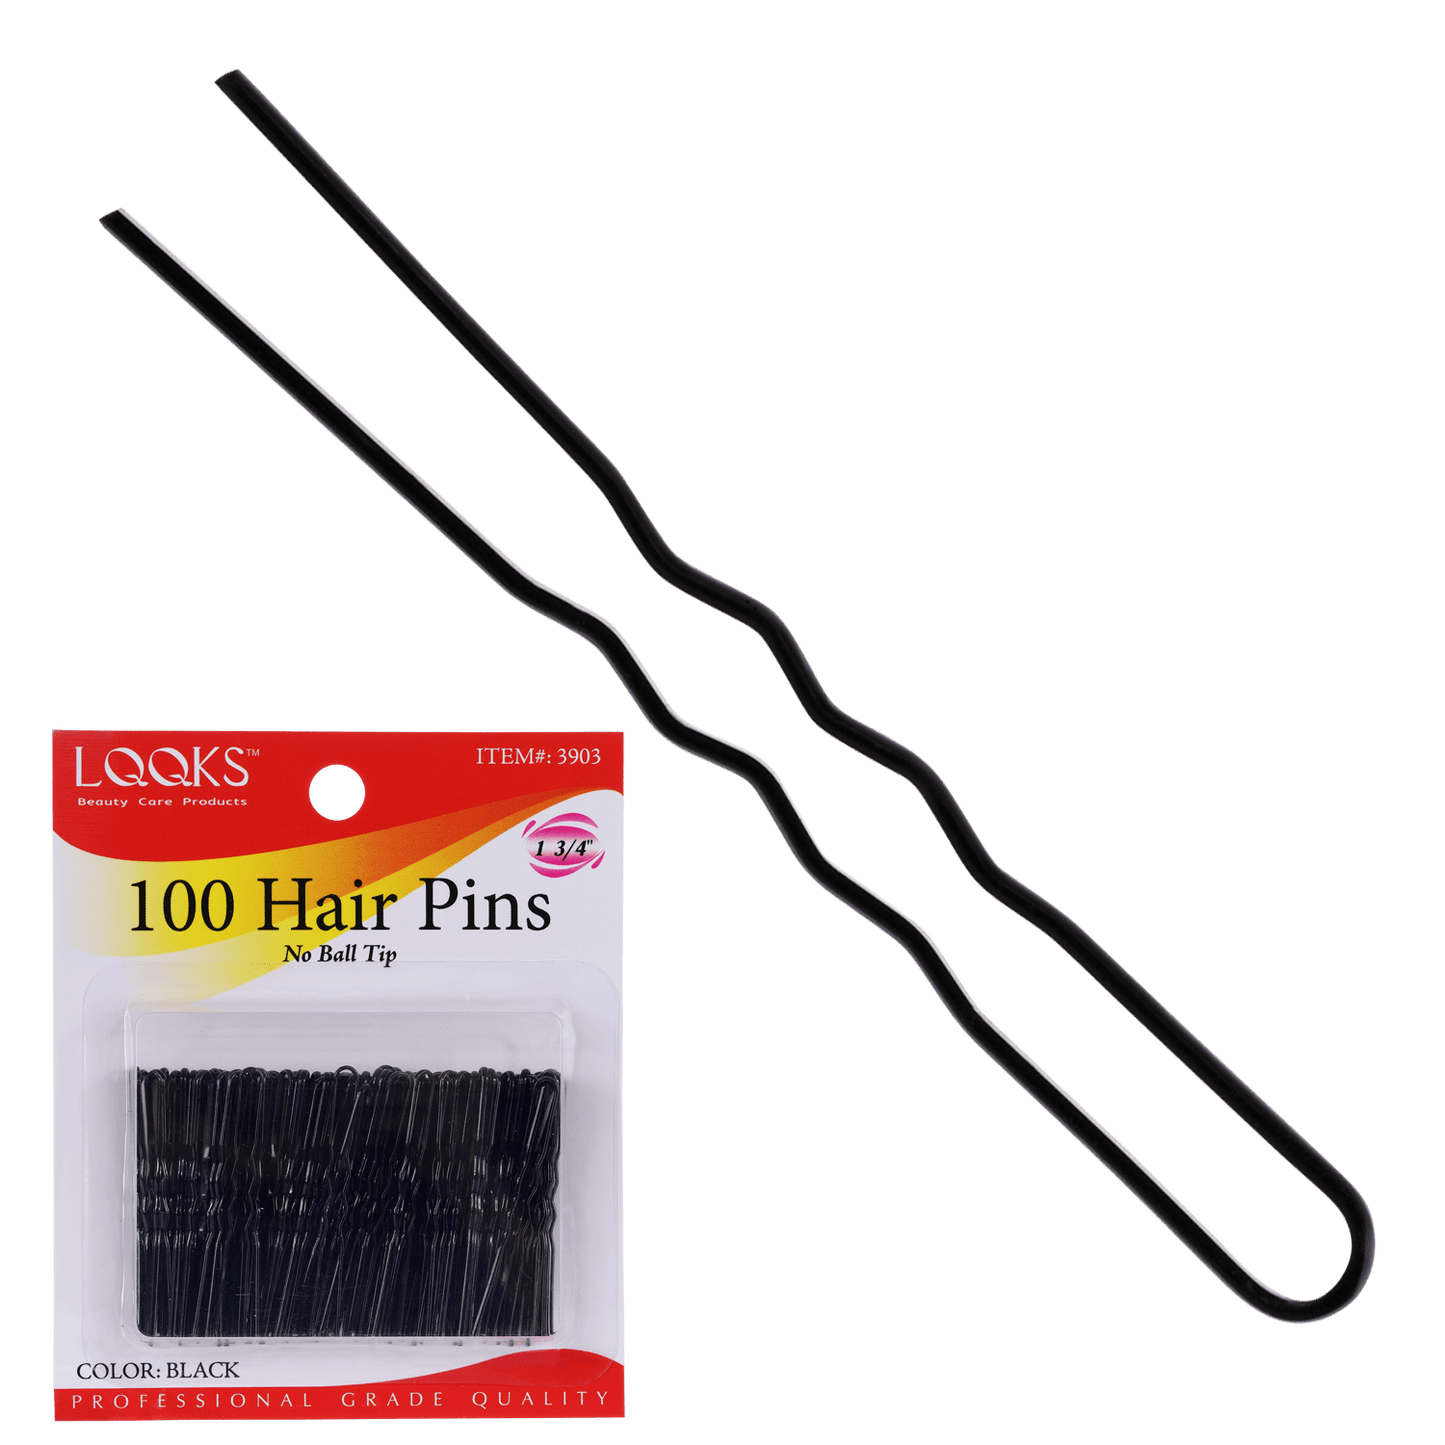 LQQKS 1 3/4" HAIR PIN NO BALL TIP 100CT BLACK - VIP Extensions